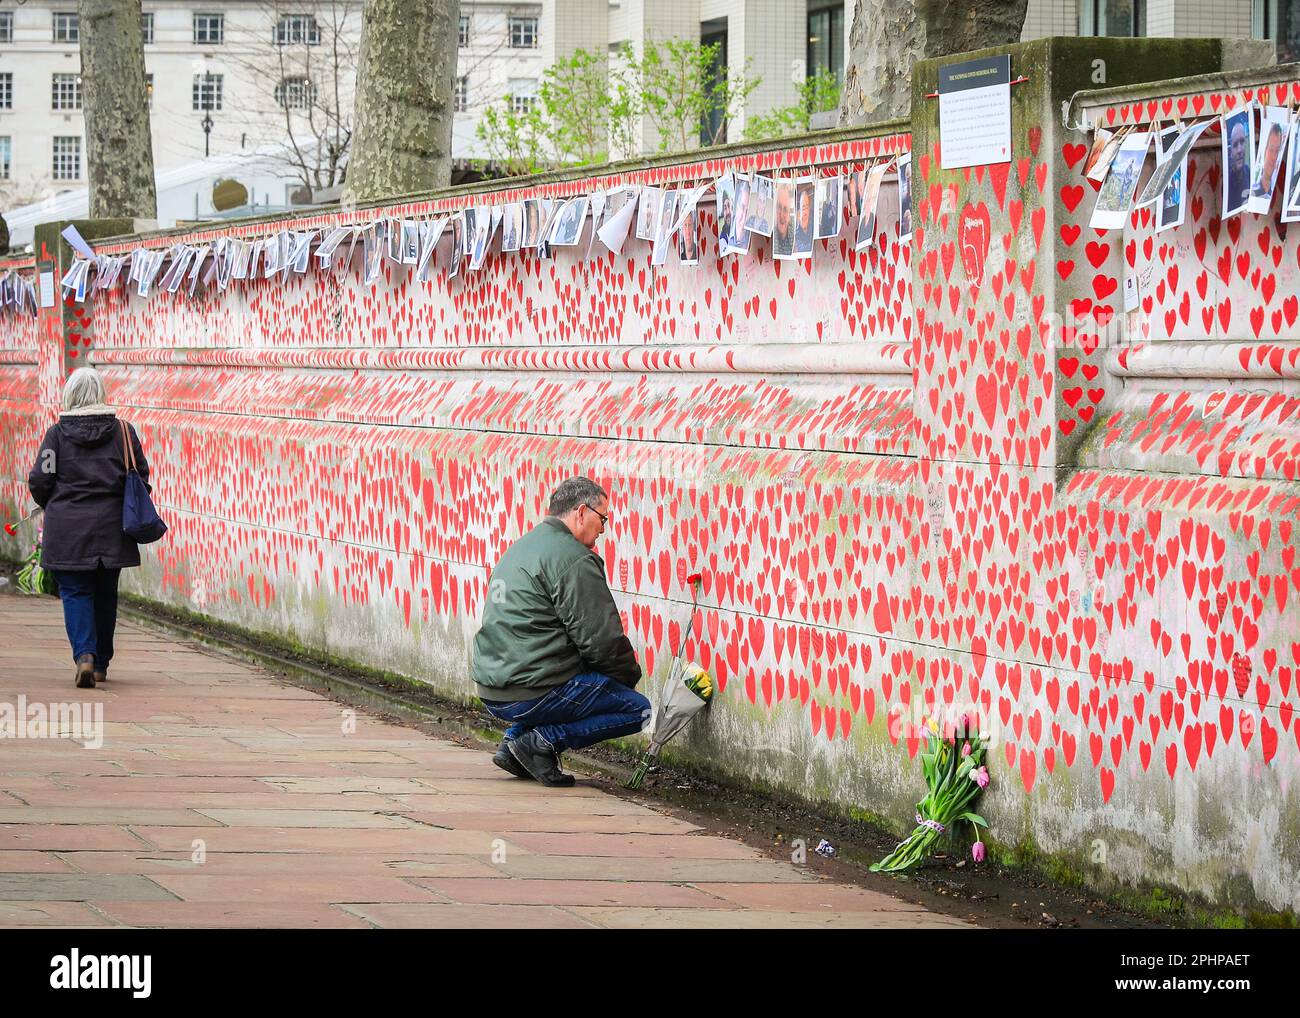 Londres, Royaume-Uni. 29th mars 2023. Un homme réfléchit tranquillement. Des familles, des amis, des collègues et d'autres personnes endeuillées se souvenant des victimes du coronavirus sont venus célébrer aujourd'hui l'anniversaire du mur national du Covid, organisé par les amis du mur, le long de la Tamise. Des photos de centaines de victimes sont affichées sur une longue ligne le long du mur.le mur a été créé pour la première fois en 2021 et son anniversaire est le mercredi 29th mars. Credit: Imagetraceur/Alamy Live News Banque D'Images